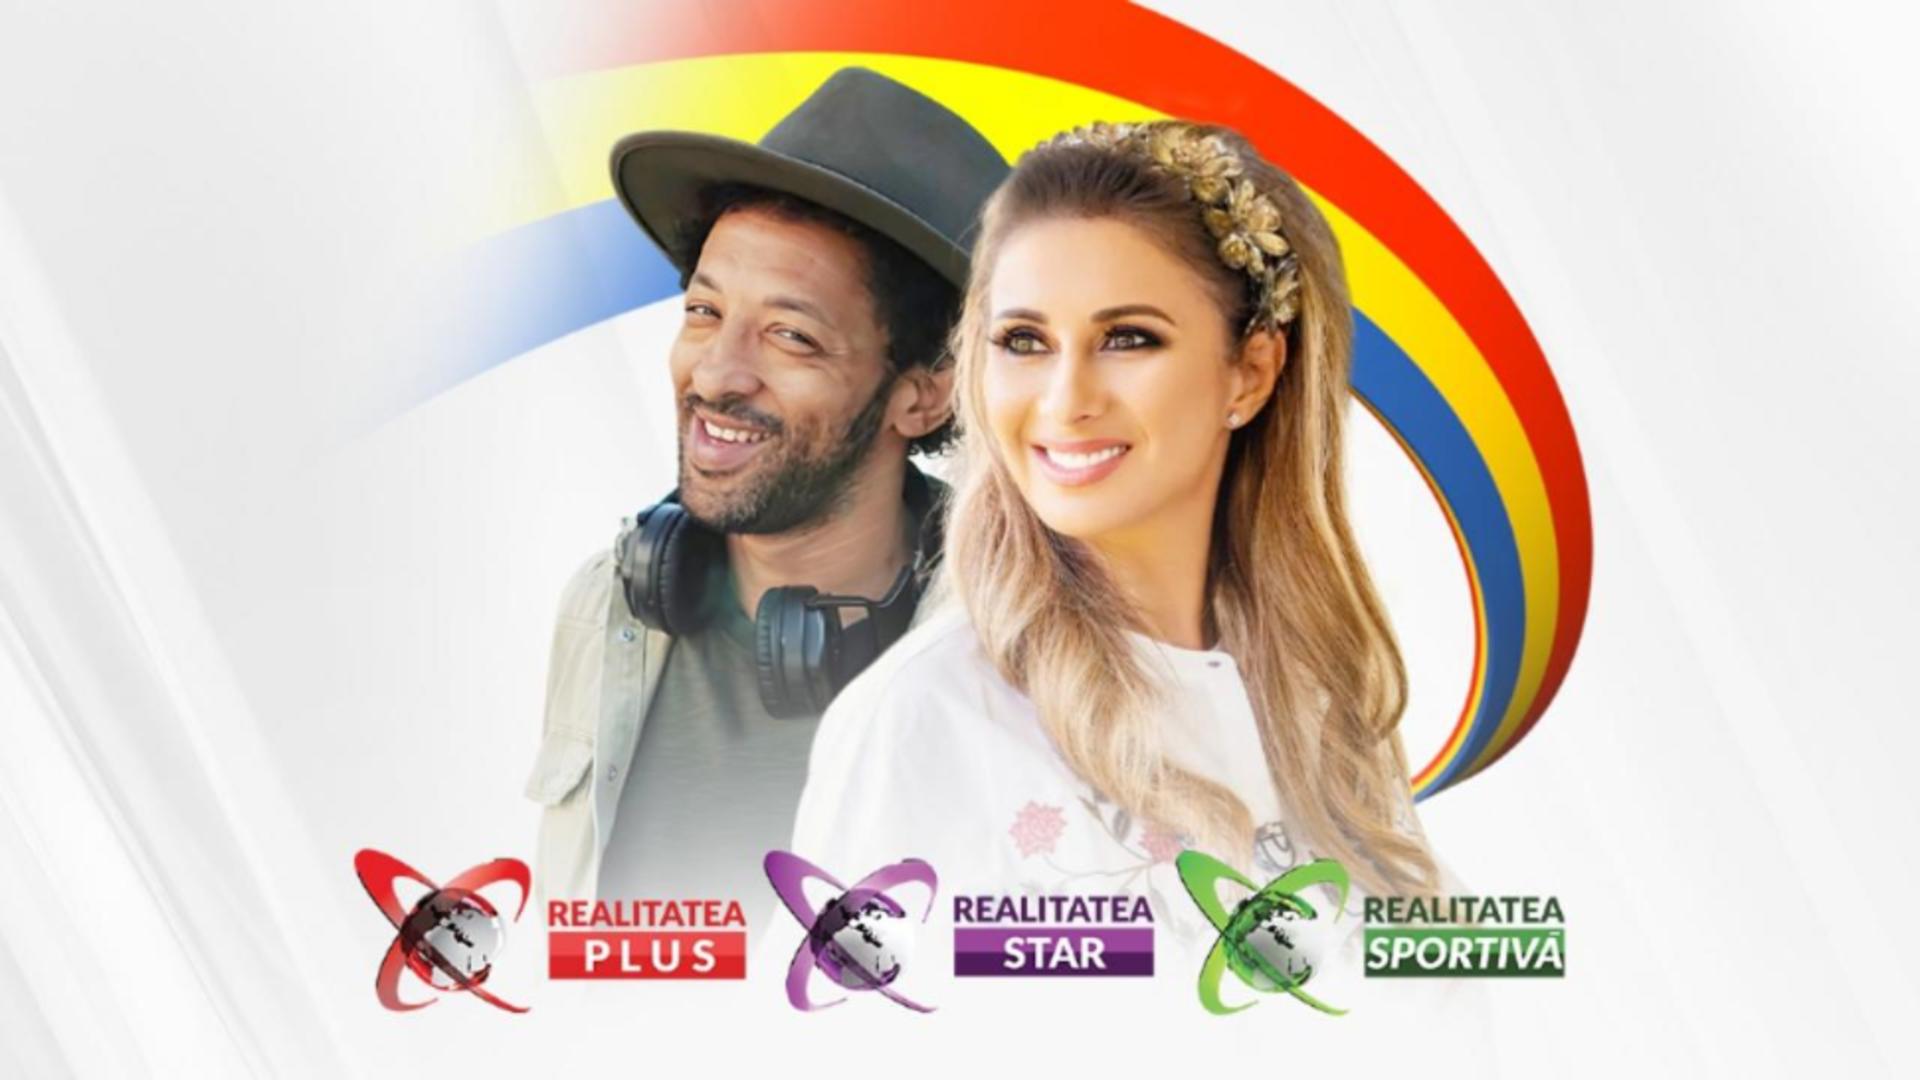 Trustul media lansează DOUĂ televiziuni noi: Realitatea Sportivă și Realitatea Star